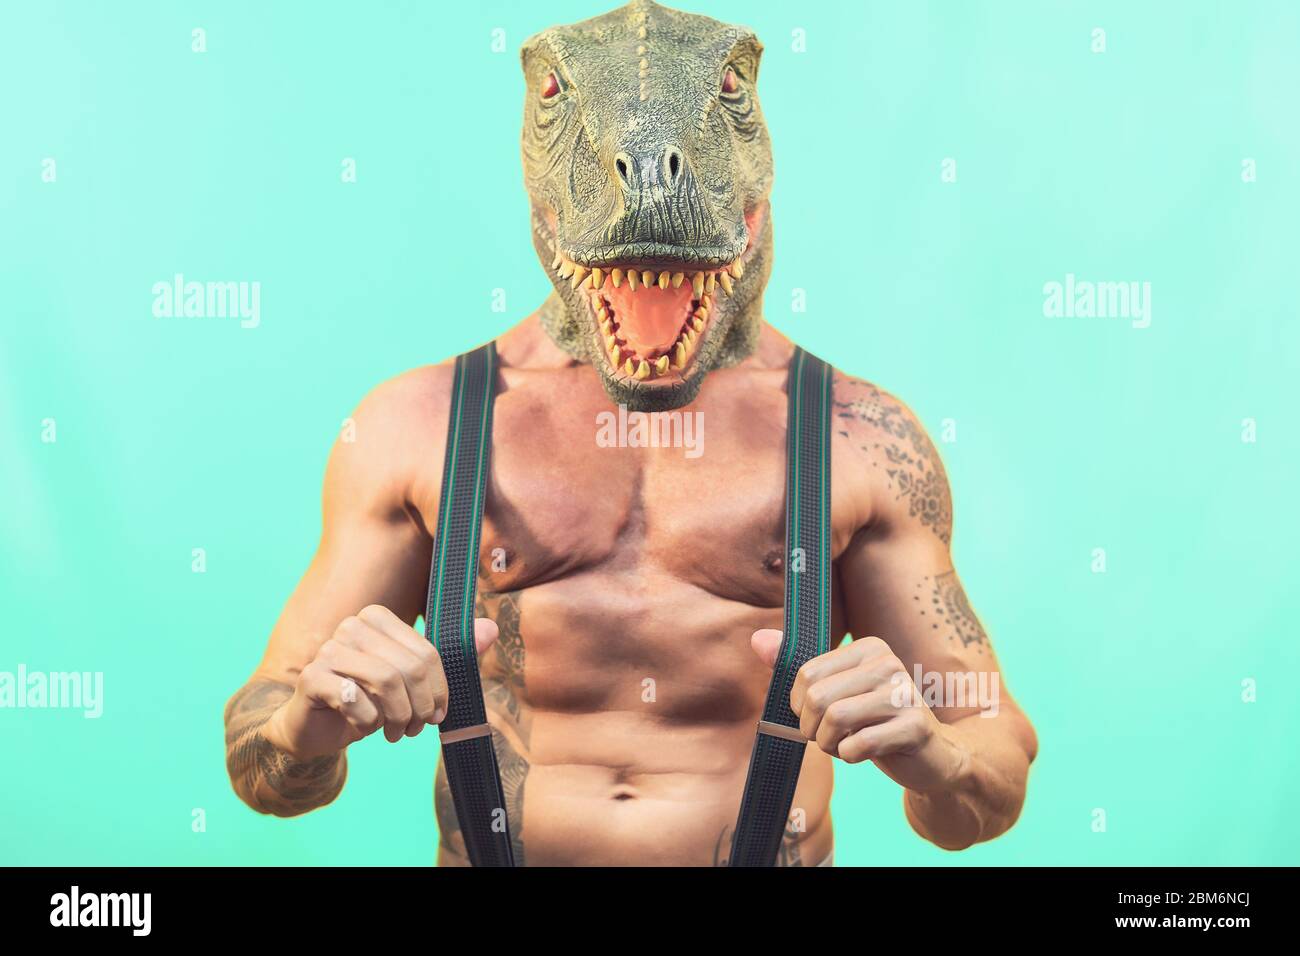 FIT senior homme portant le masque de dinosaure t-rex - Crazy hipster gars ayant le plaisir de célébrer mascarade fêtes de carnaval Banque D'Images